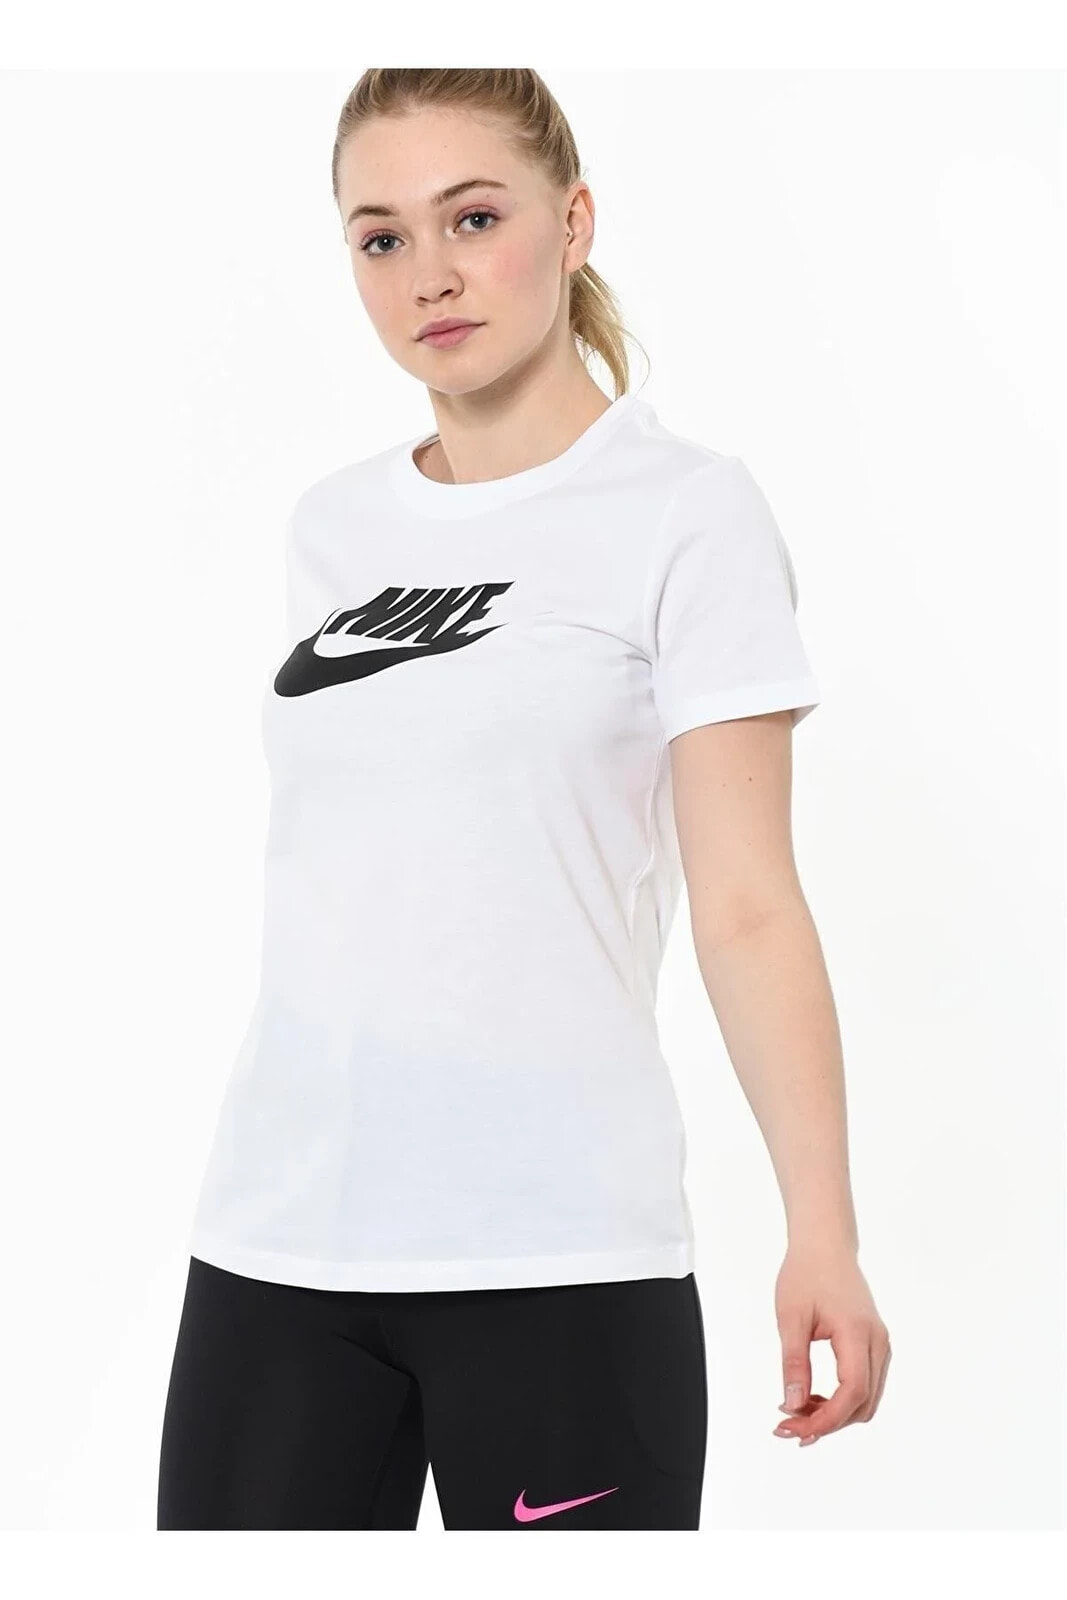 Bv6169-100 Kadın T-shirt